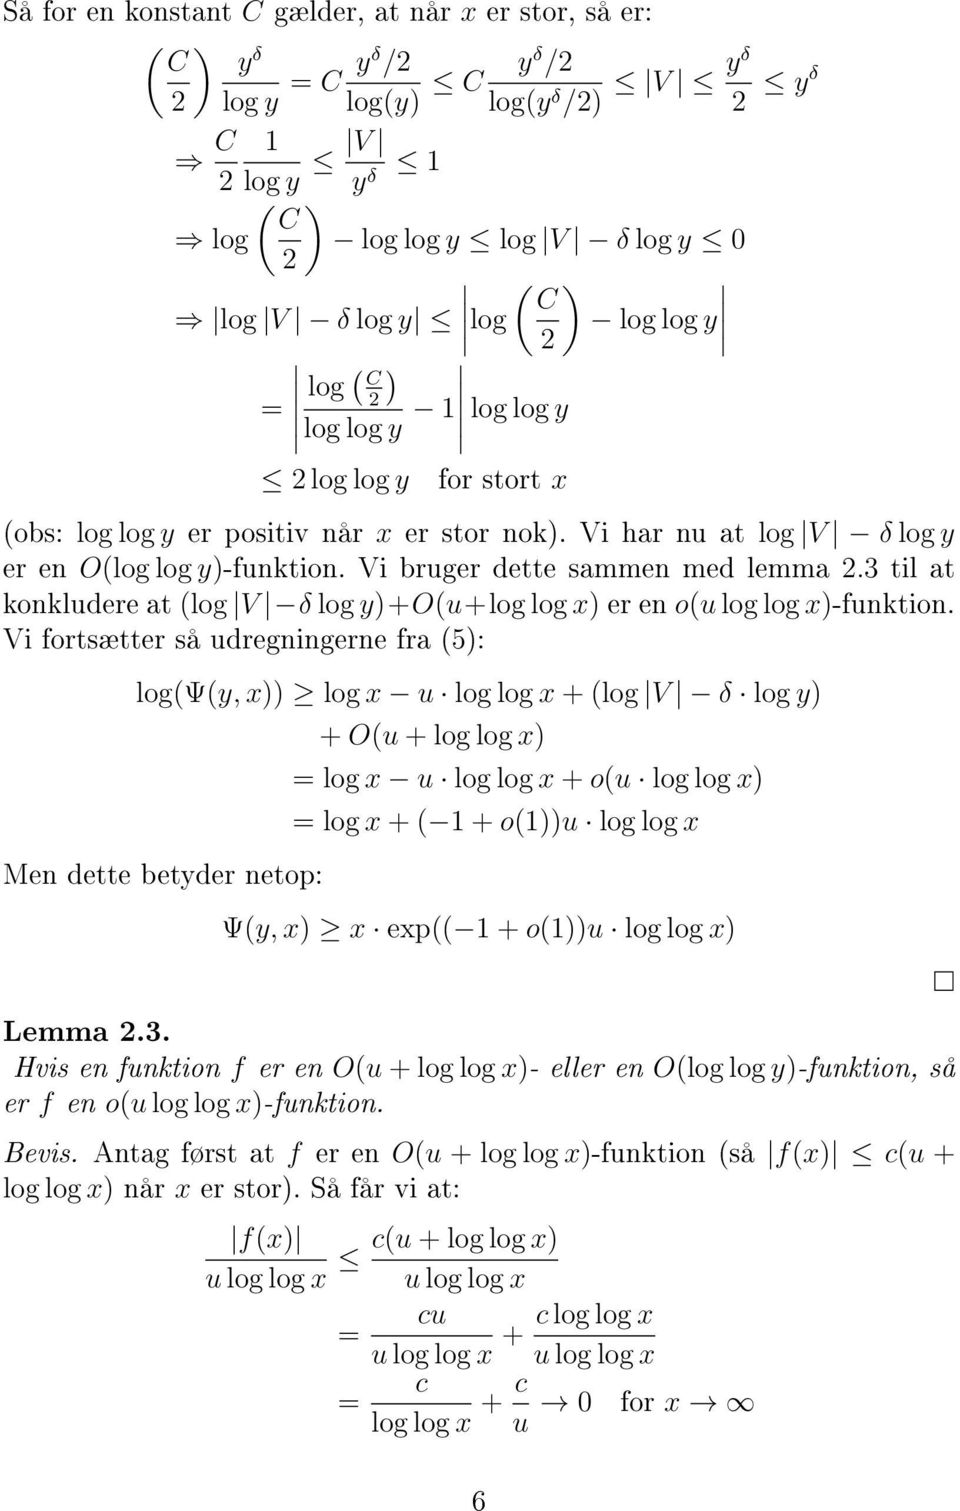 Vi fortsætter så udregningerne fra 5): logψy, x)) log x u log log x + log V δ ) Men dette betyder netop: + Ou + log log x) = log x u log log x + ou log log x) = log x + 1 + o1))u log log x Ψy, x) x